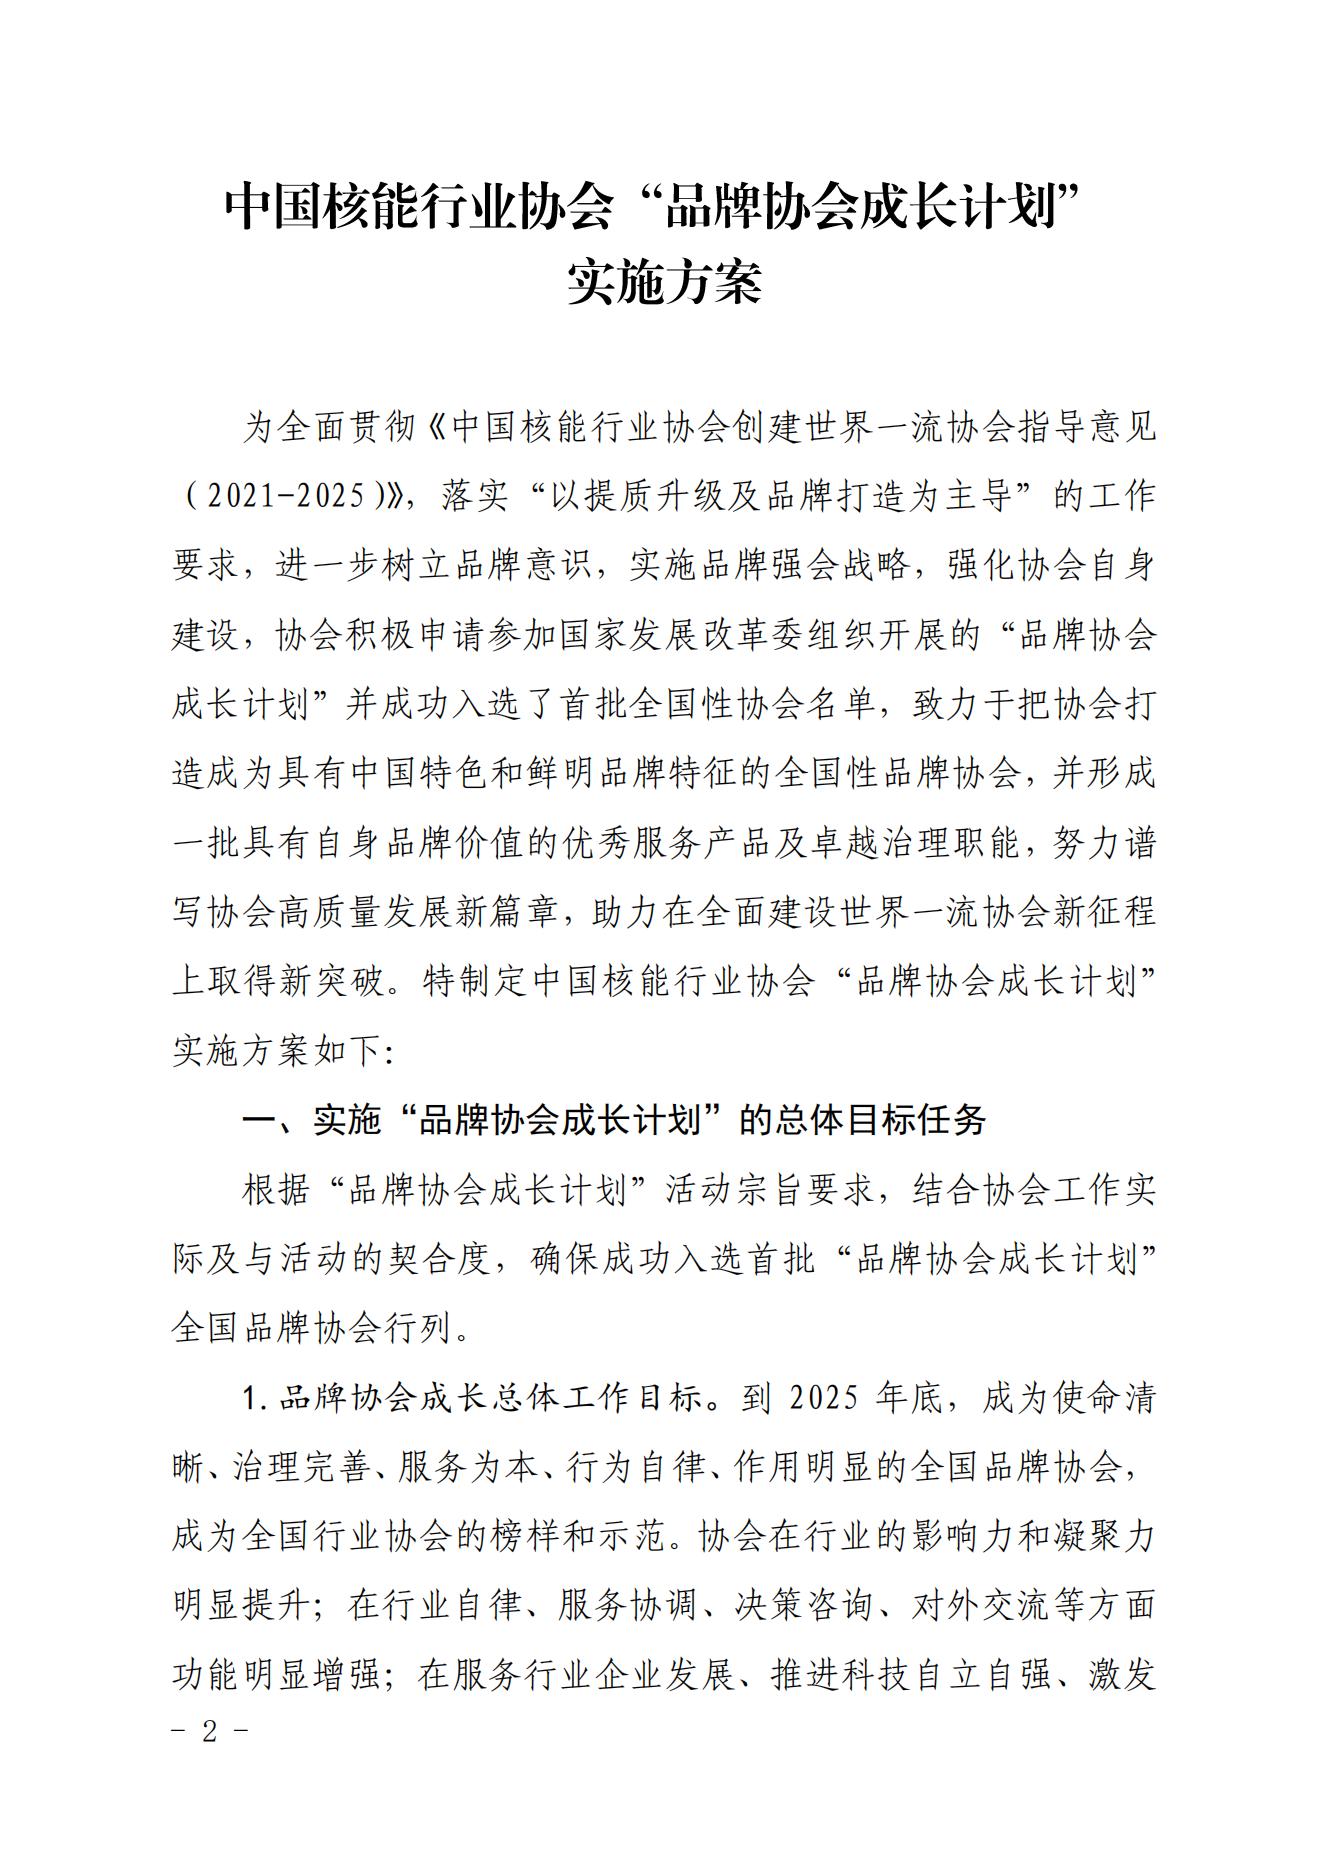 关于印发《中国核能行业协会“品牌协会成长计划”实施方案》的通知_01.jpg